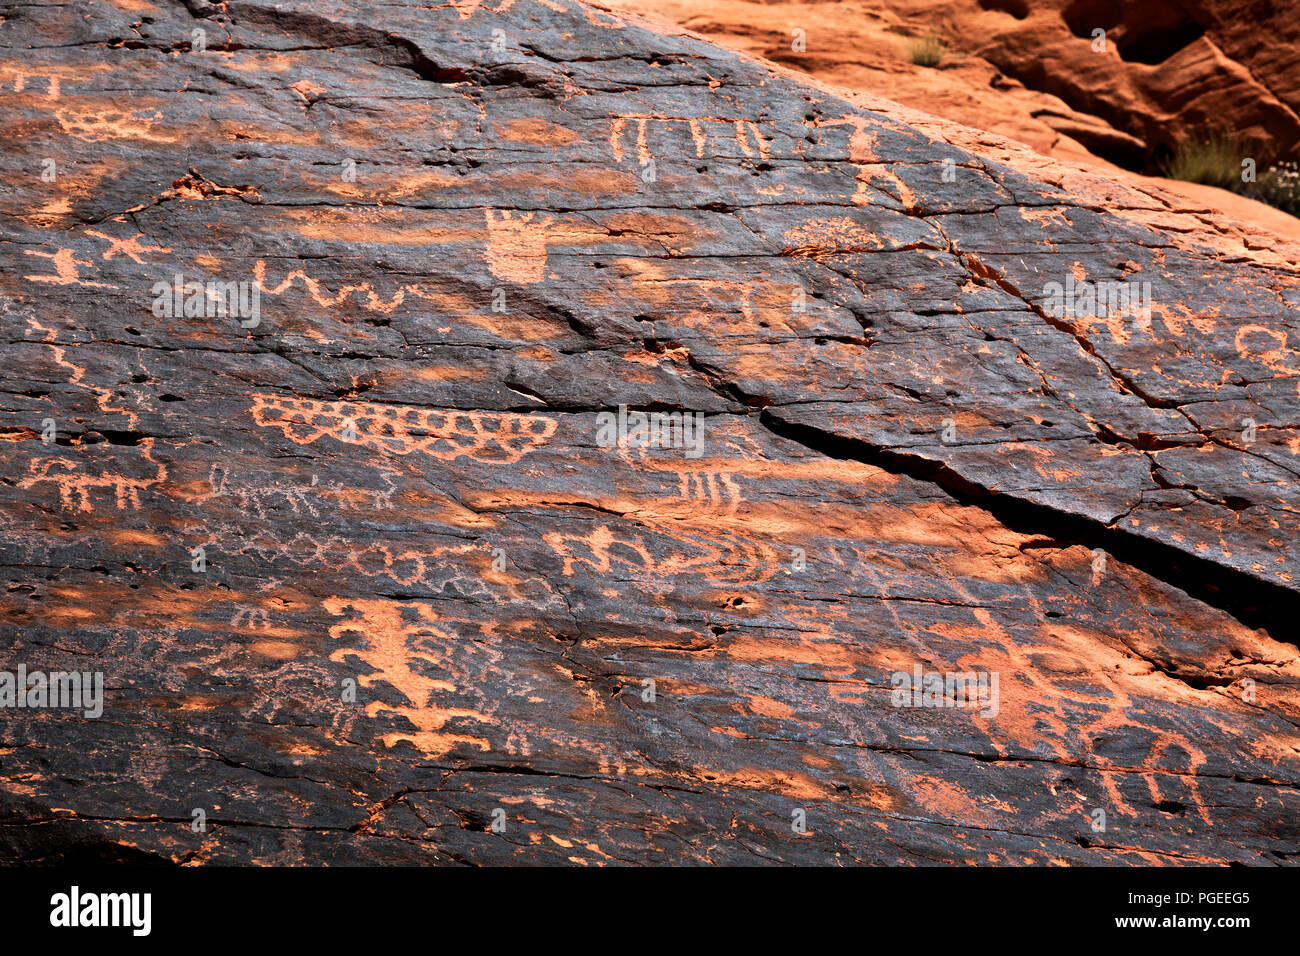 NV00008-00...NEVADA - des dessins d'animaux, de personnes et d'geometerical dessins sur le vernis du désert dans la région de Petroglyph Canyon, une partie de l'Entente Banque D'Images